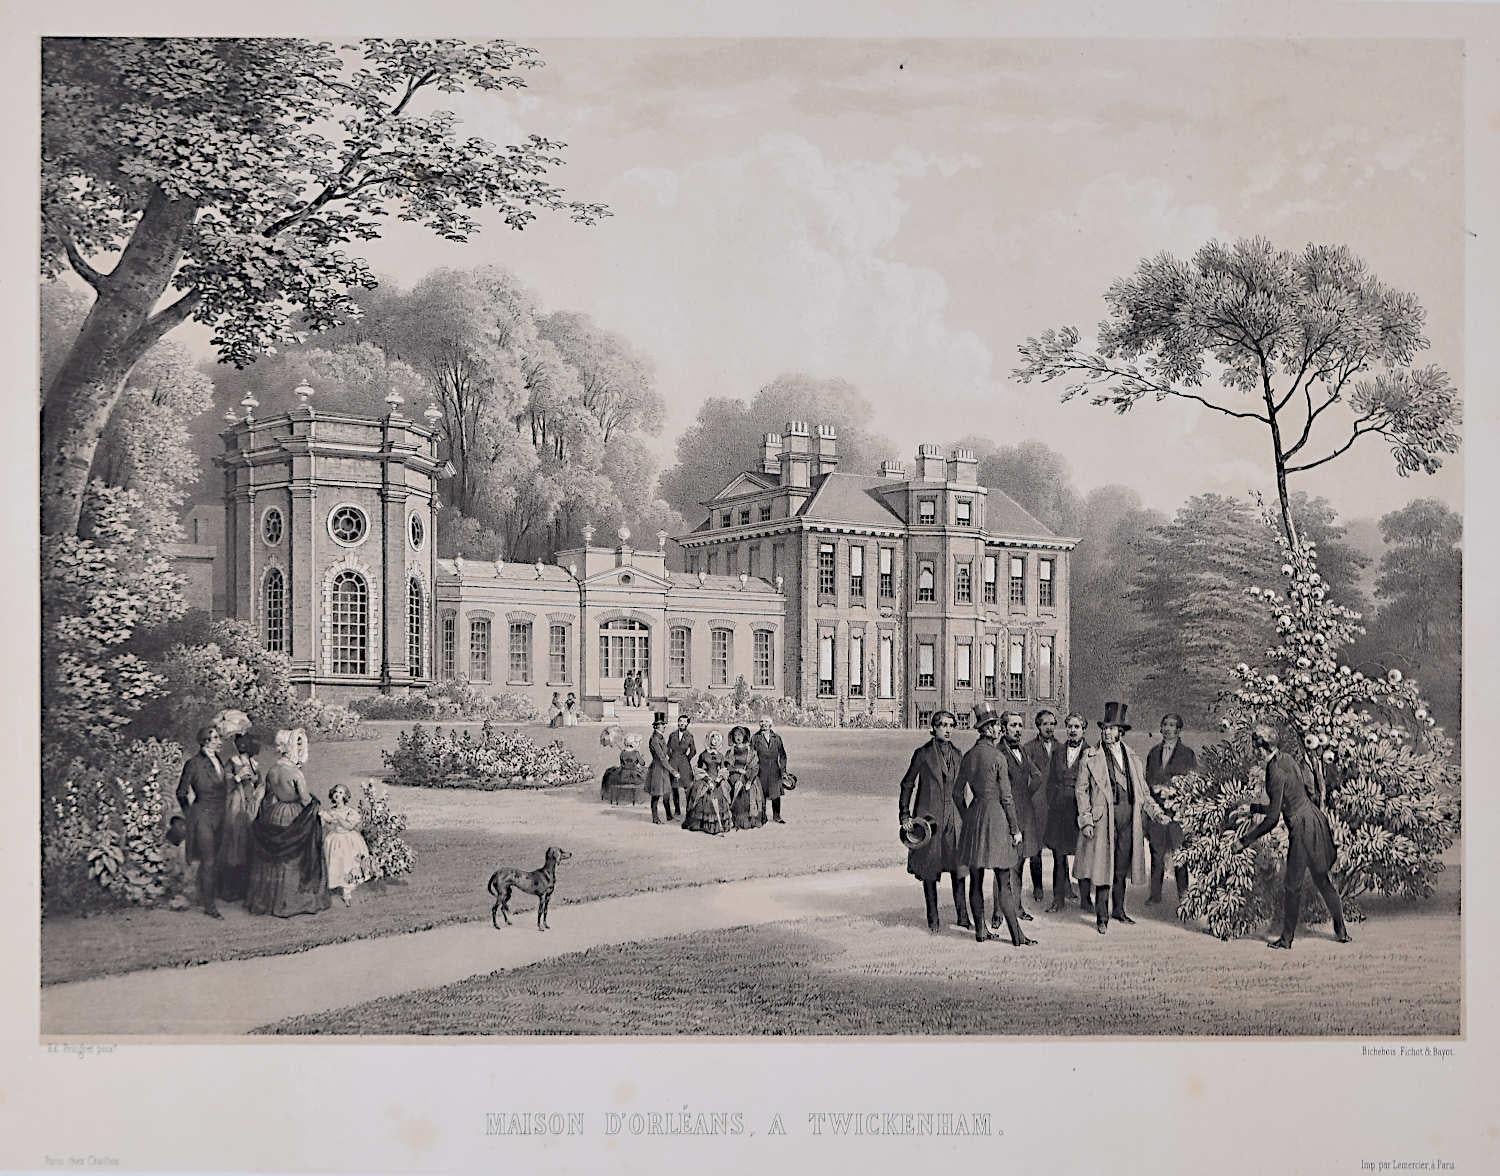 Maison d'Orleans, Twickenham, lithograph 1846 by Édouart Pinguet